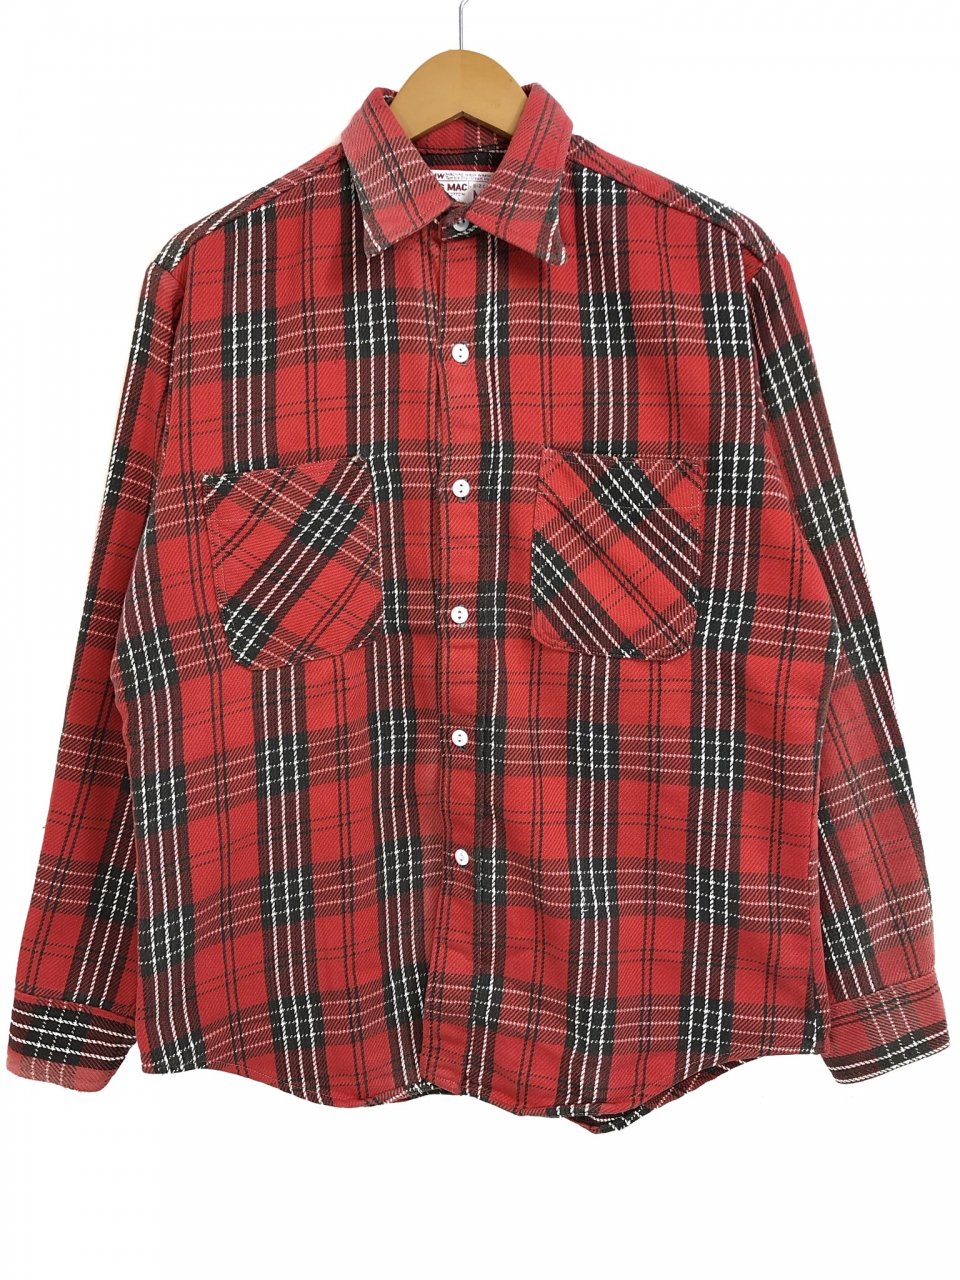 70s BIG MAC Check Flannel L/S Shirt #2 赤 M ビッグマック フランネルシャツ 長袖シャツ チェックシャツ  アメカジ - NEWJOKE ONLINE STORE